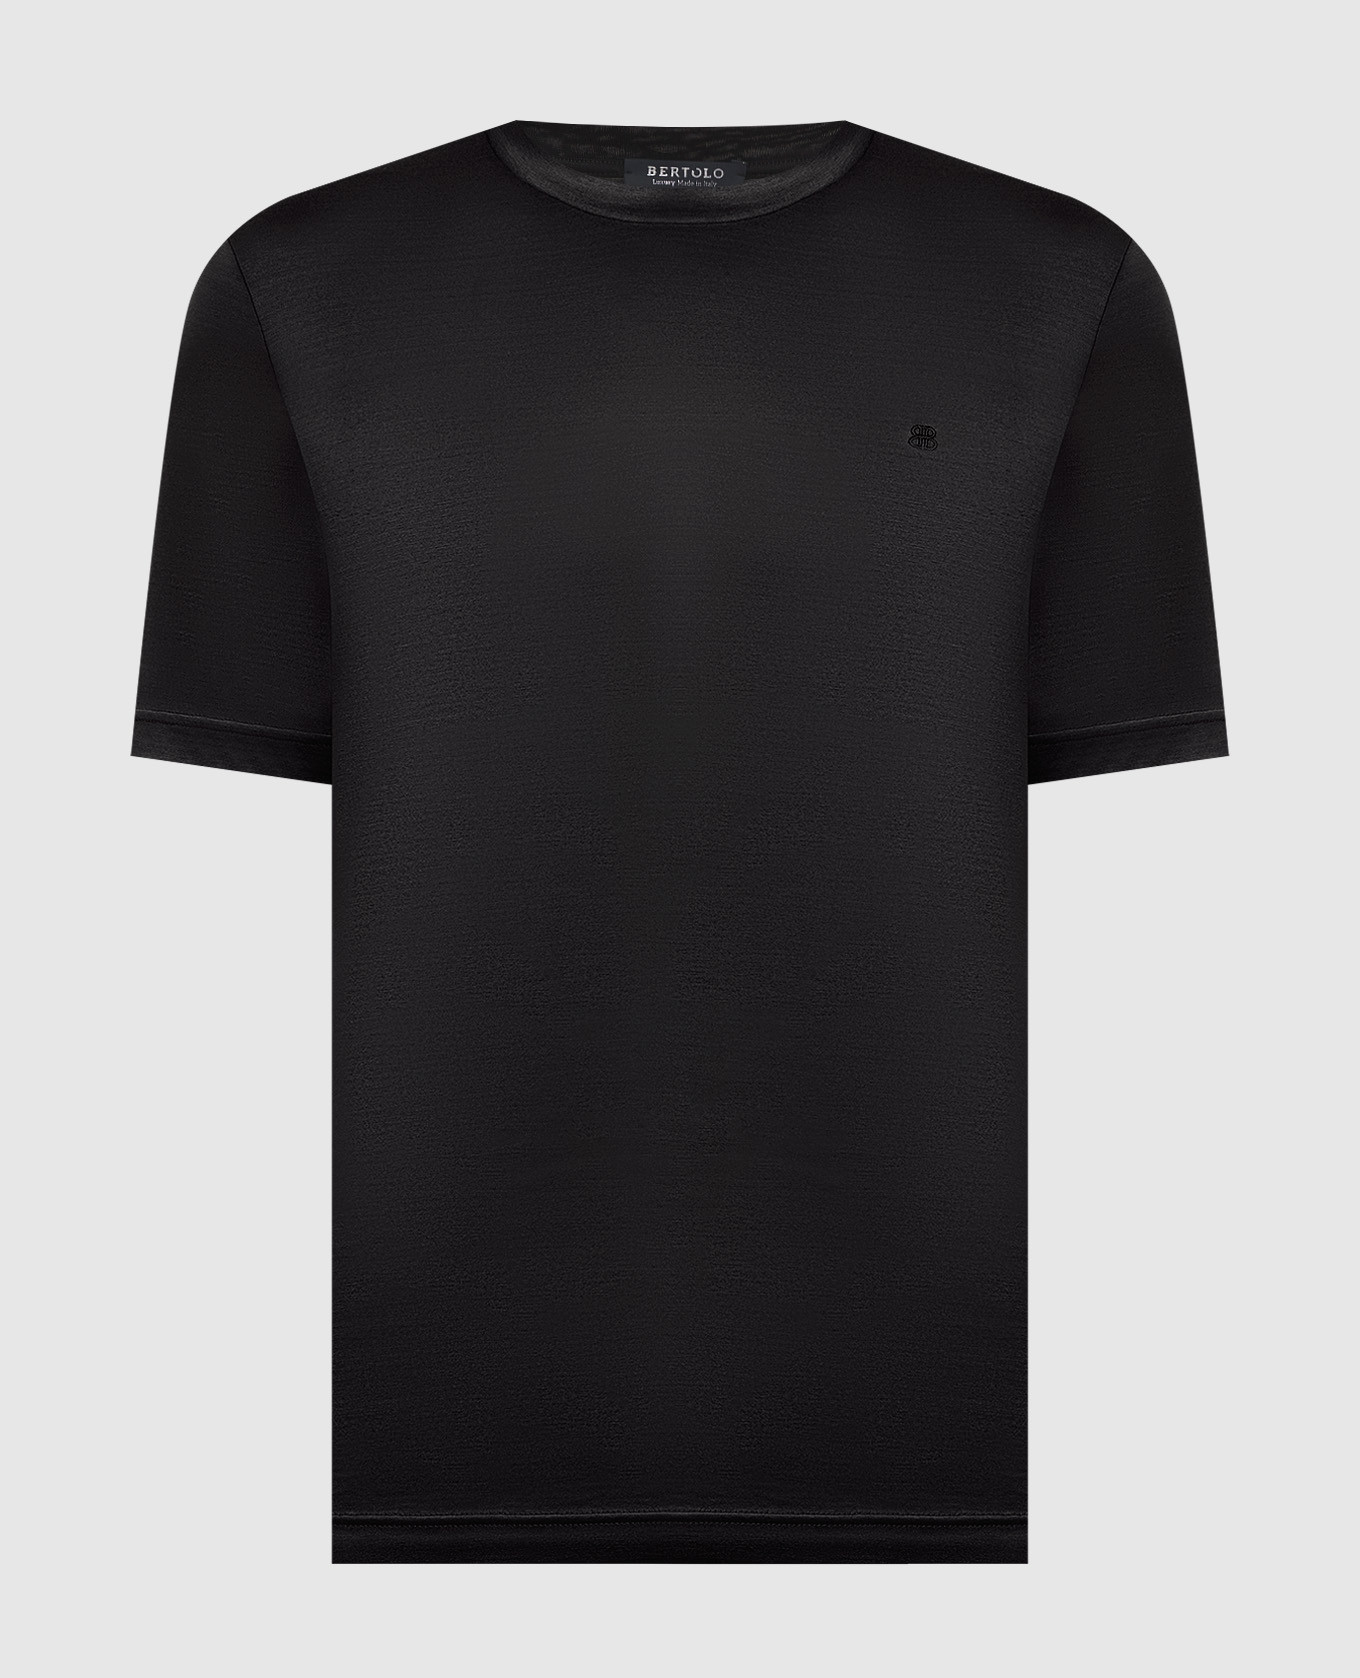 Черная футболка с вышивкой логотипа